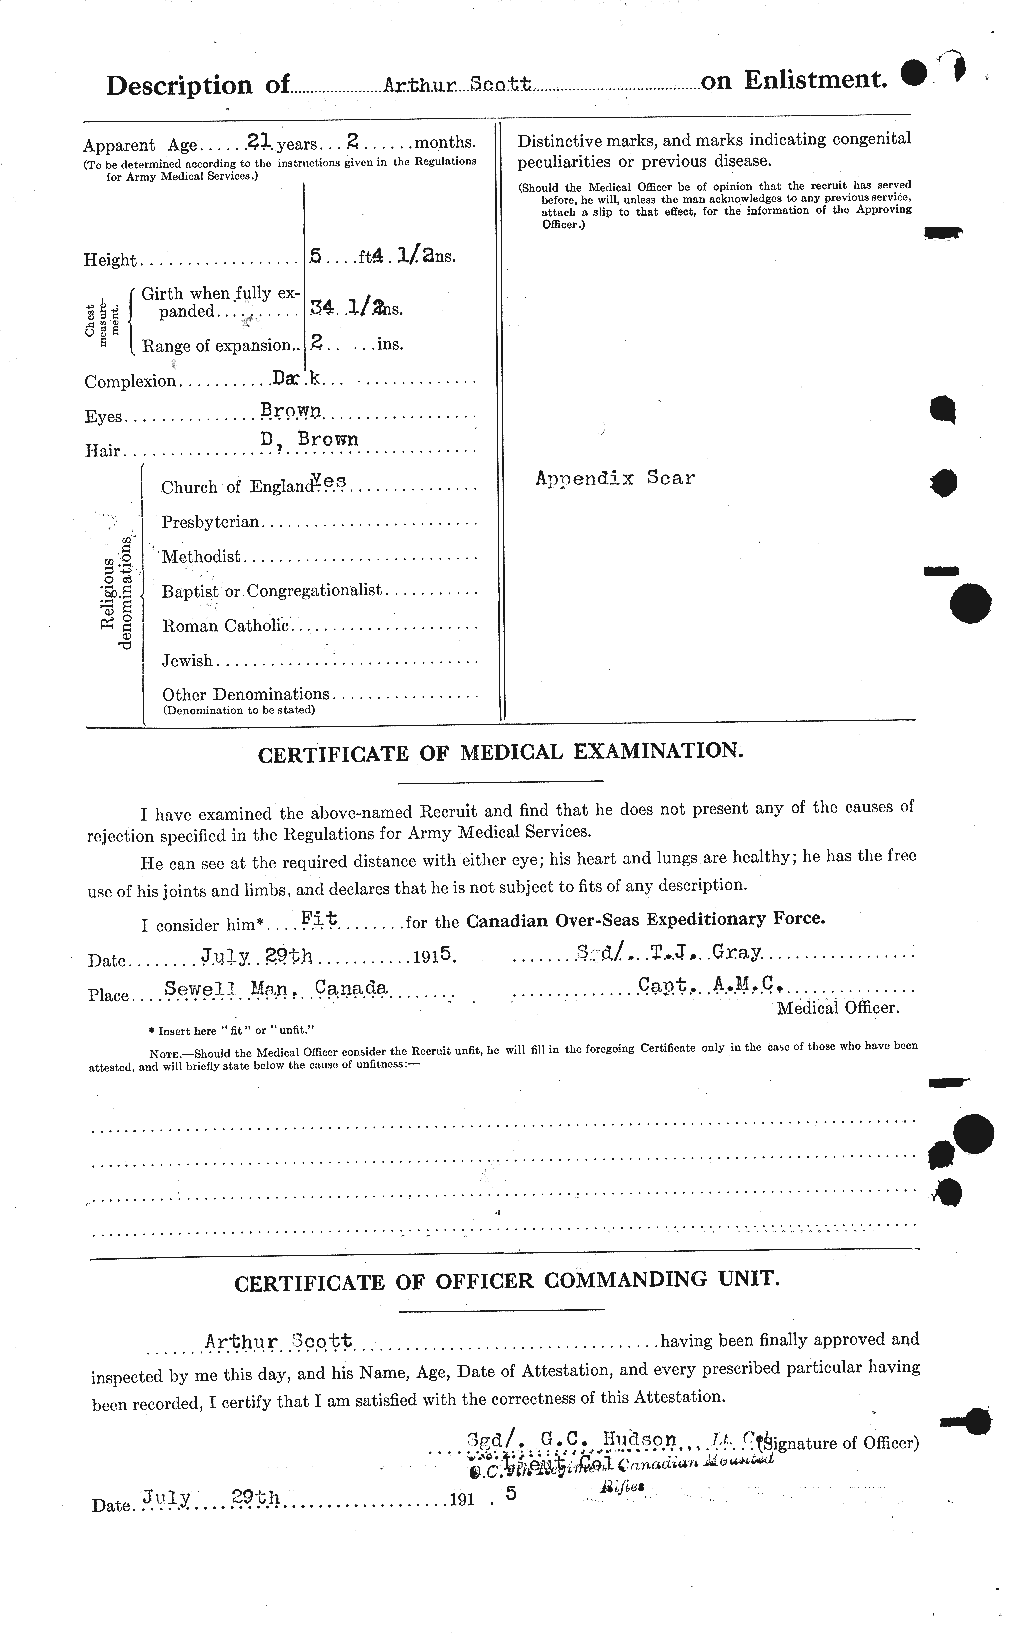 Dossiers du Personnel de la Première Guerre mondiale - CEC 086416b